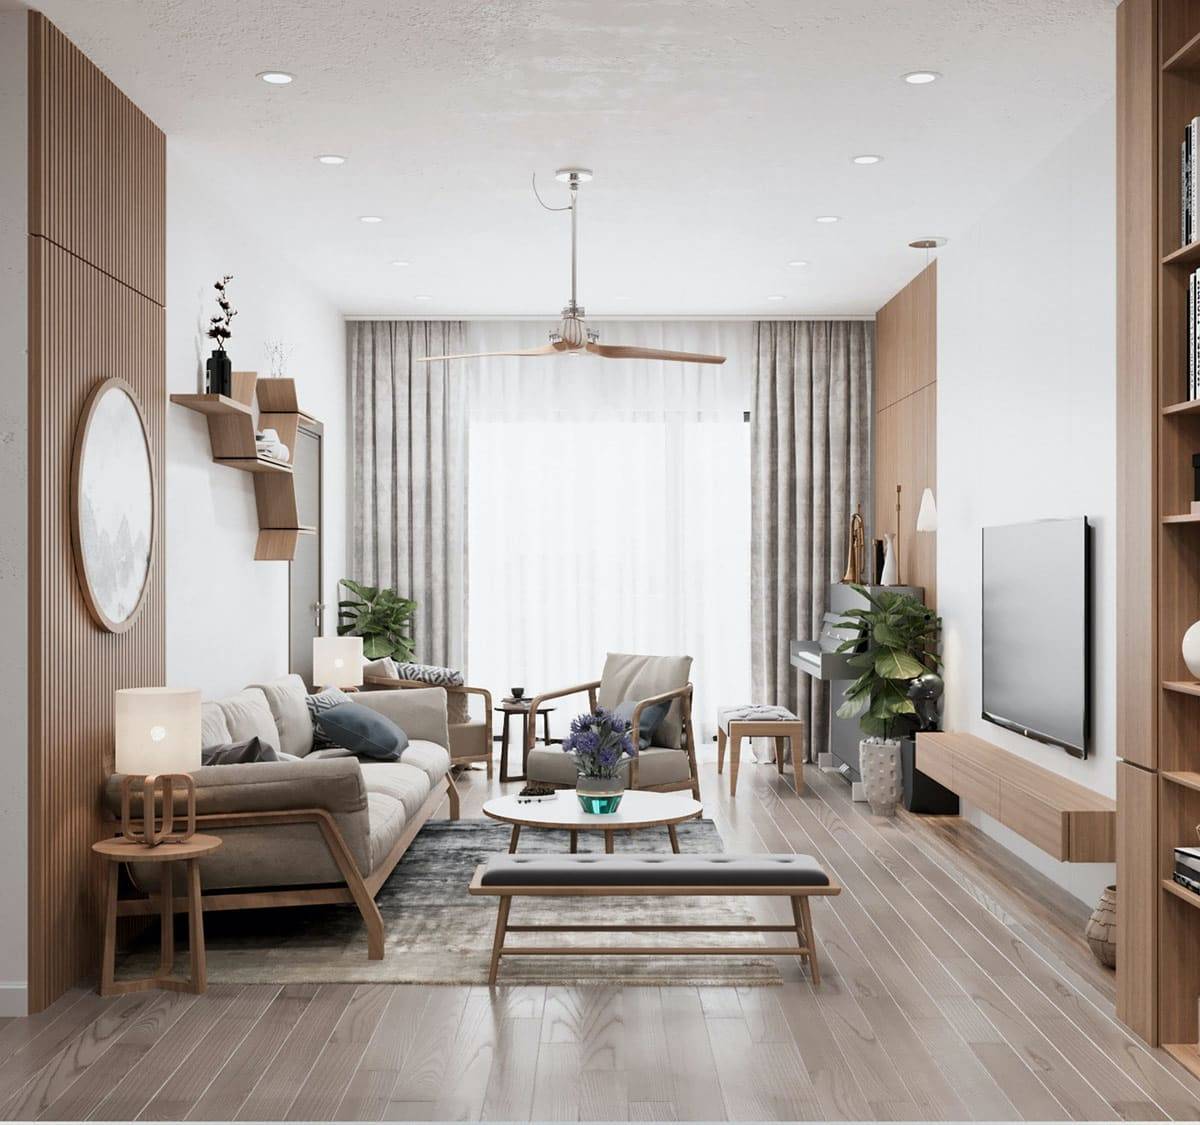 Дизайн интерьера квартир 2020 года - лучшие идеи, тренды, основные моменты при оформлении и выборе дизайна